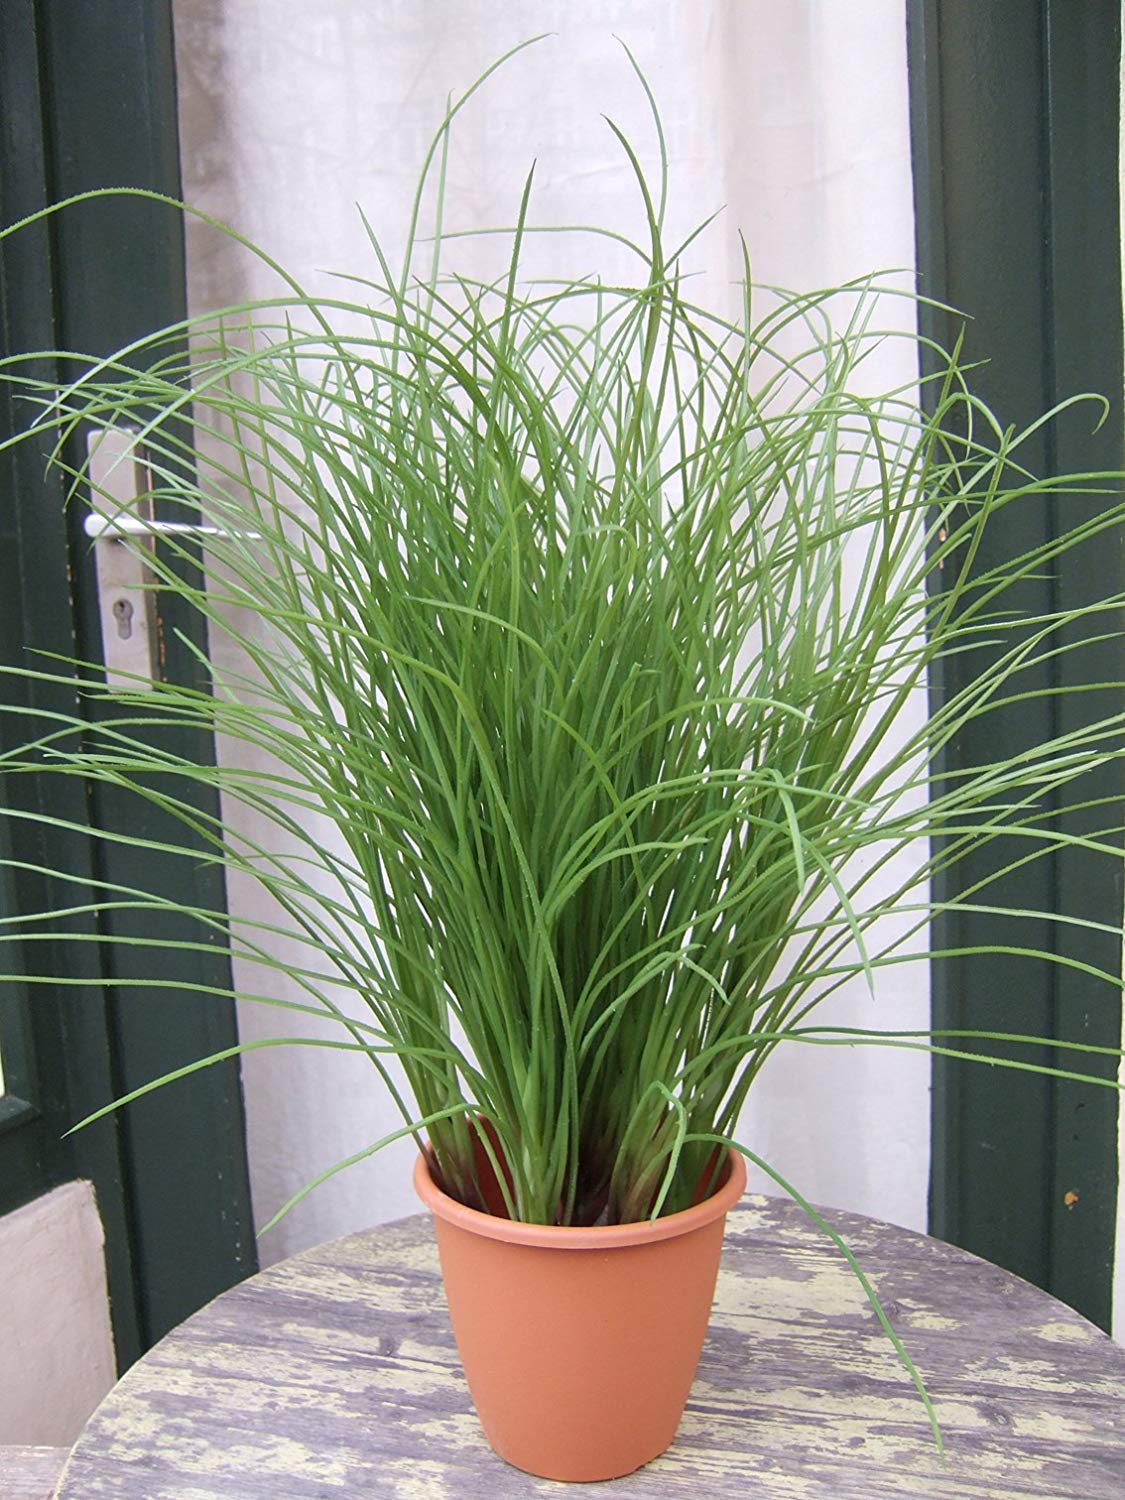 Licht & Grün - Künstliches helles und fülliges Gras ca. 70cm hoch im Topf  in Top-Qualität